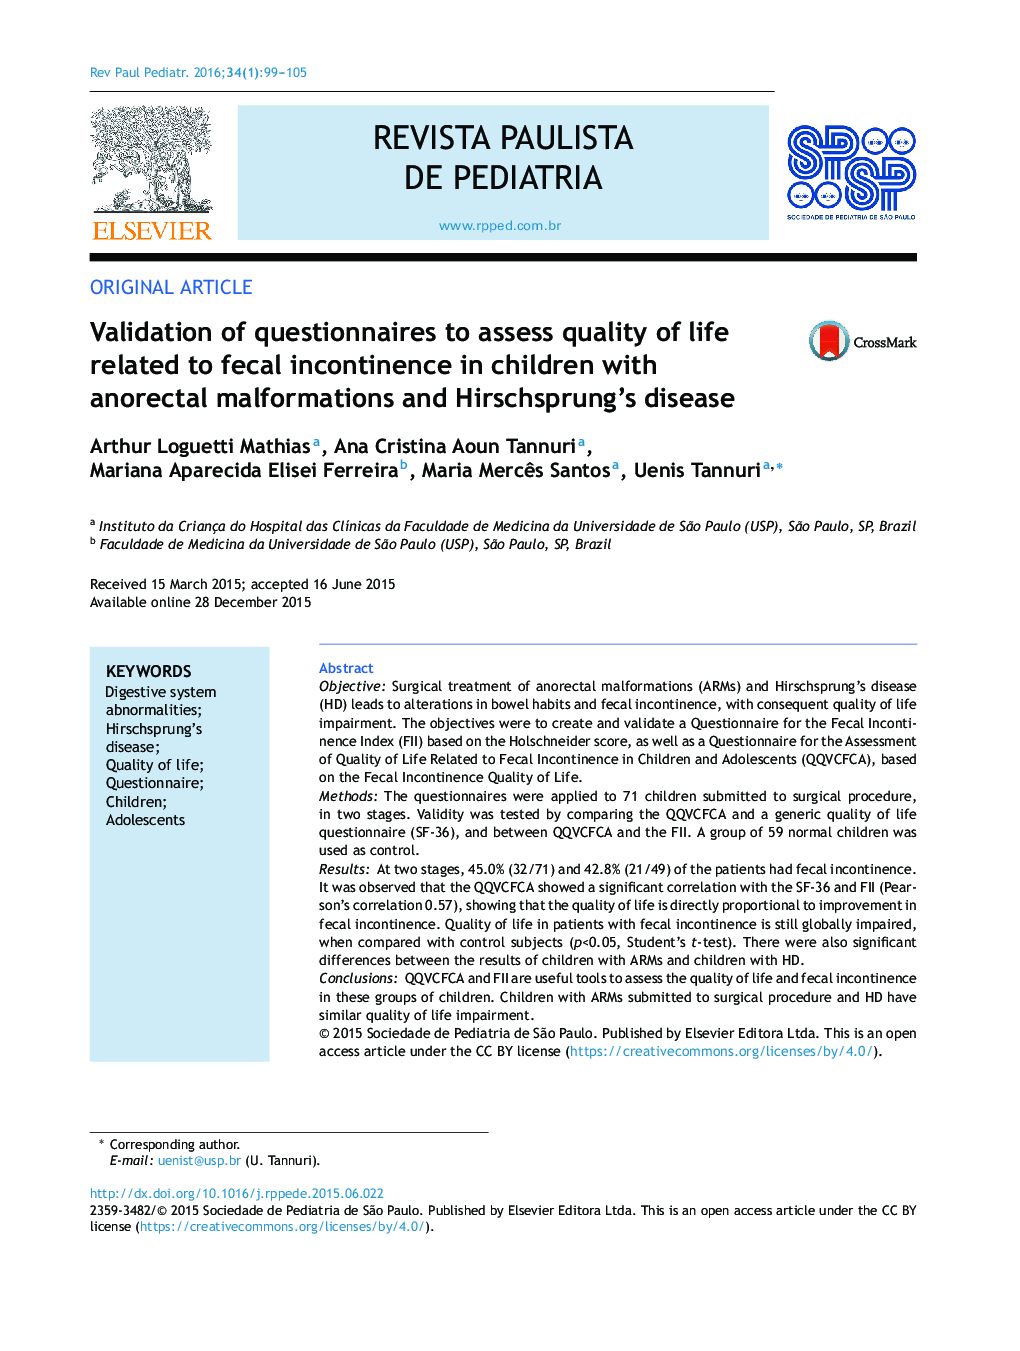 اعتبار سنجی پرسشنامه ها برای ارزیابی کیفیت زندگی مرتبط با بی اختیاری مدفوع در کودکان مبتلا به ناهنجاری های انحرافی و بیماری هیرشپرونگ 